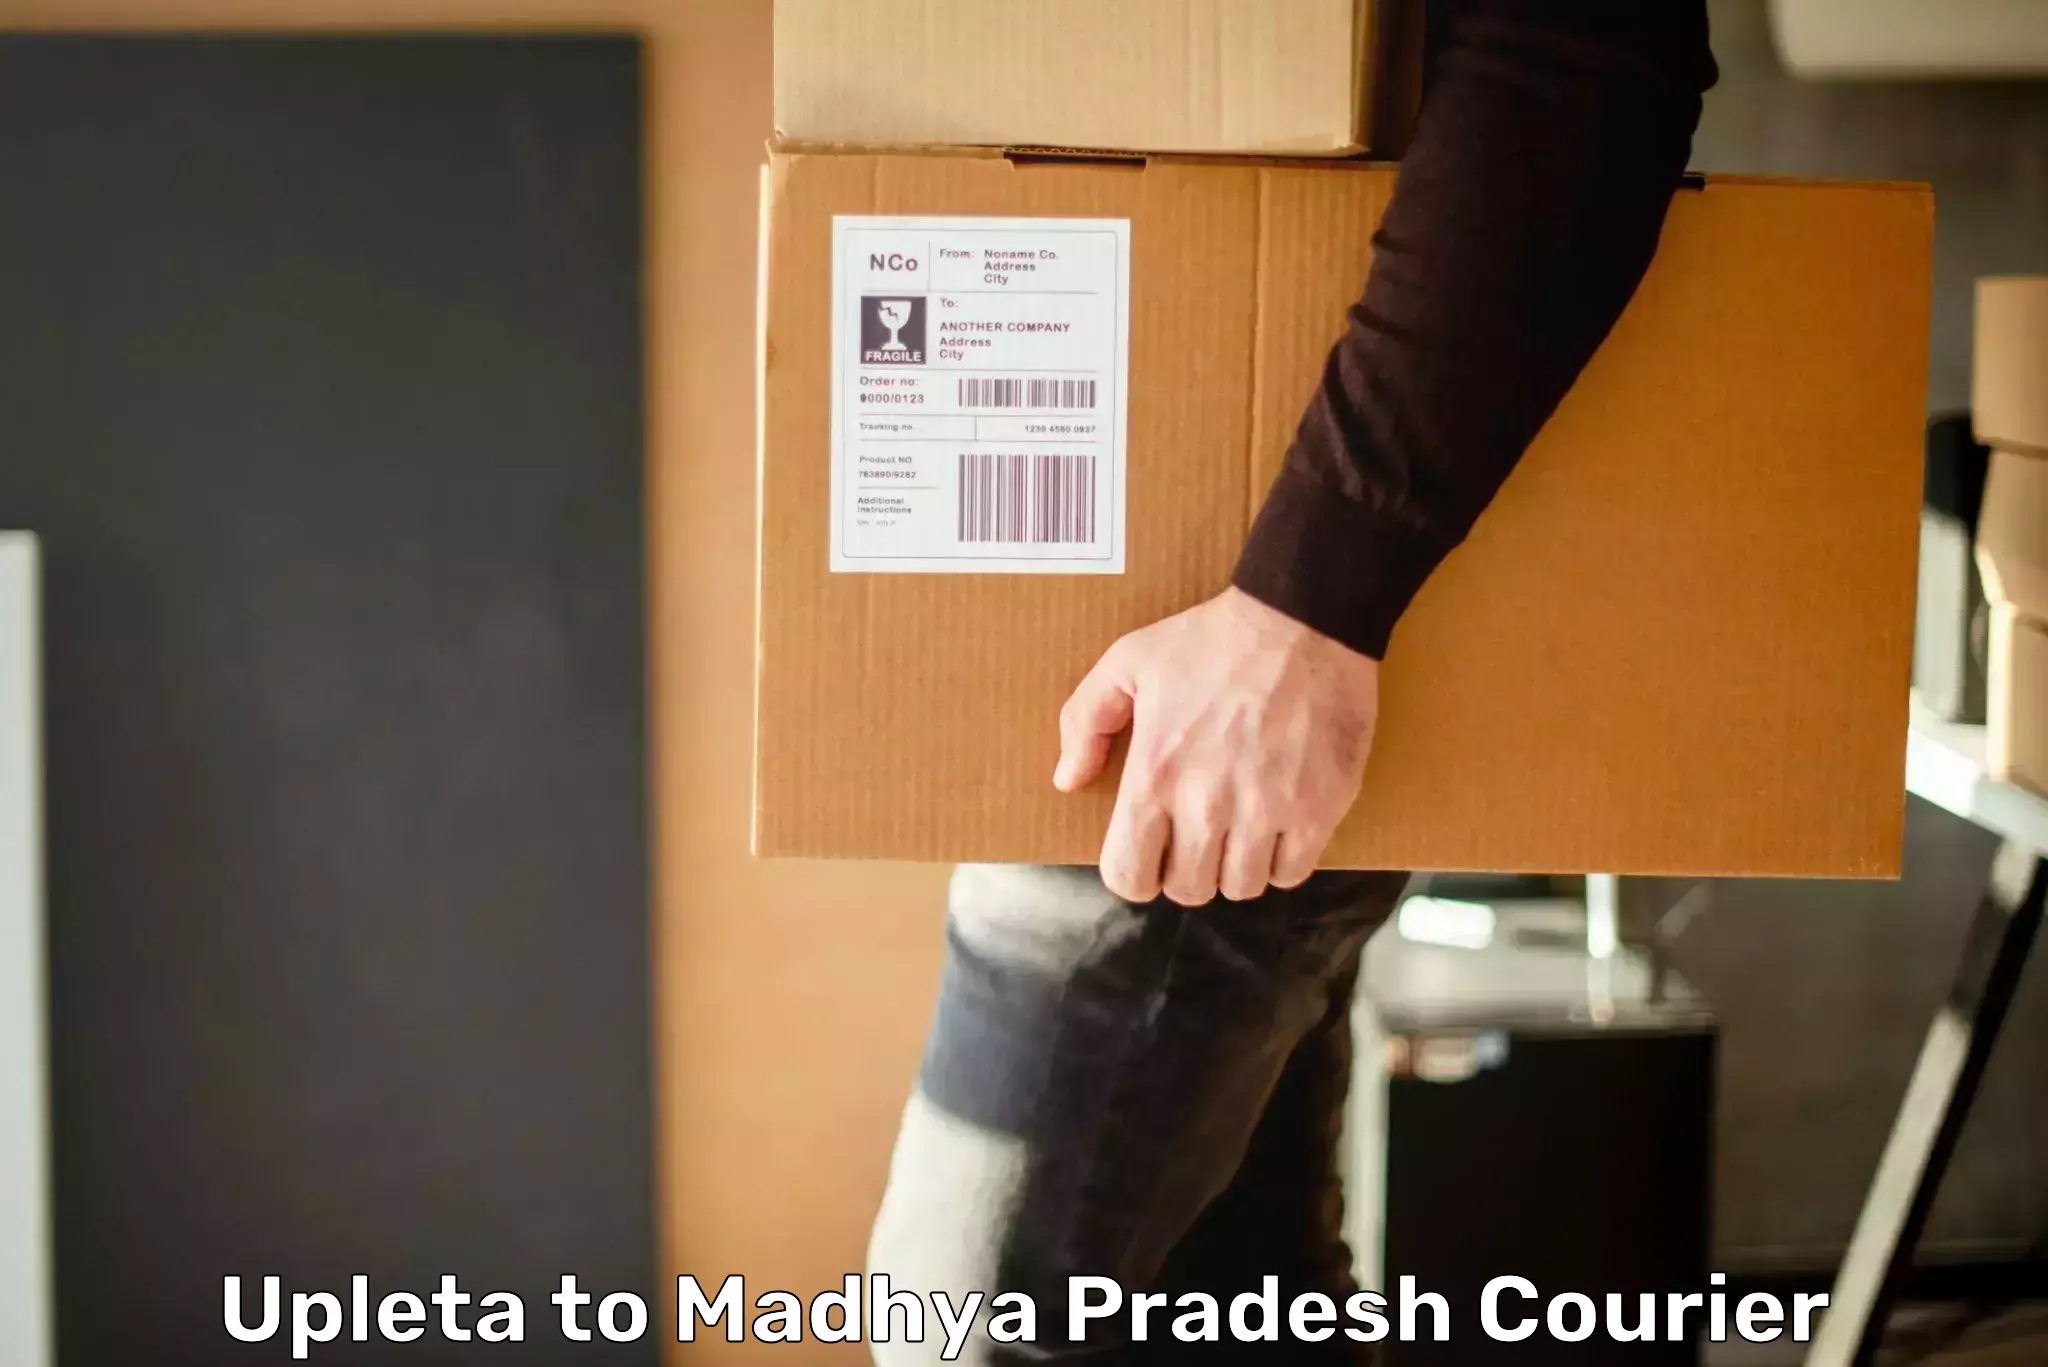 Express postal services Upleta to Madhya Pradesh